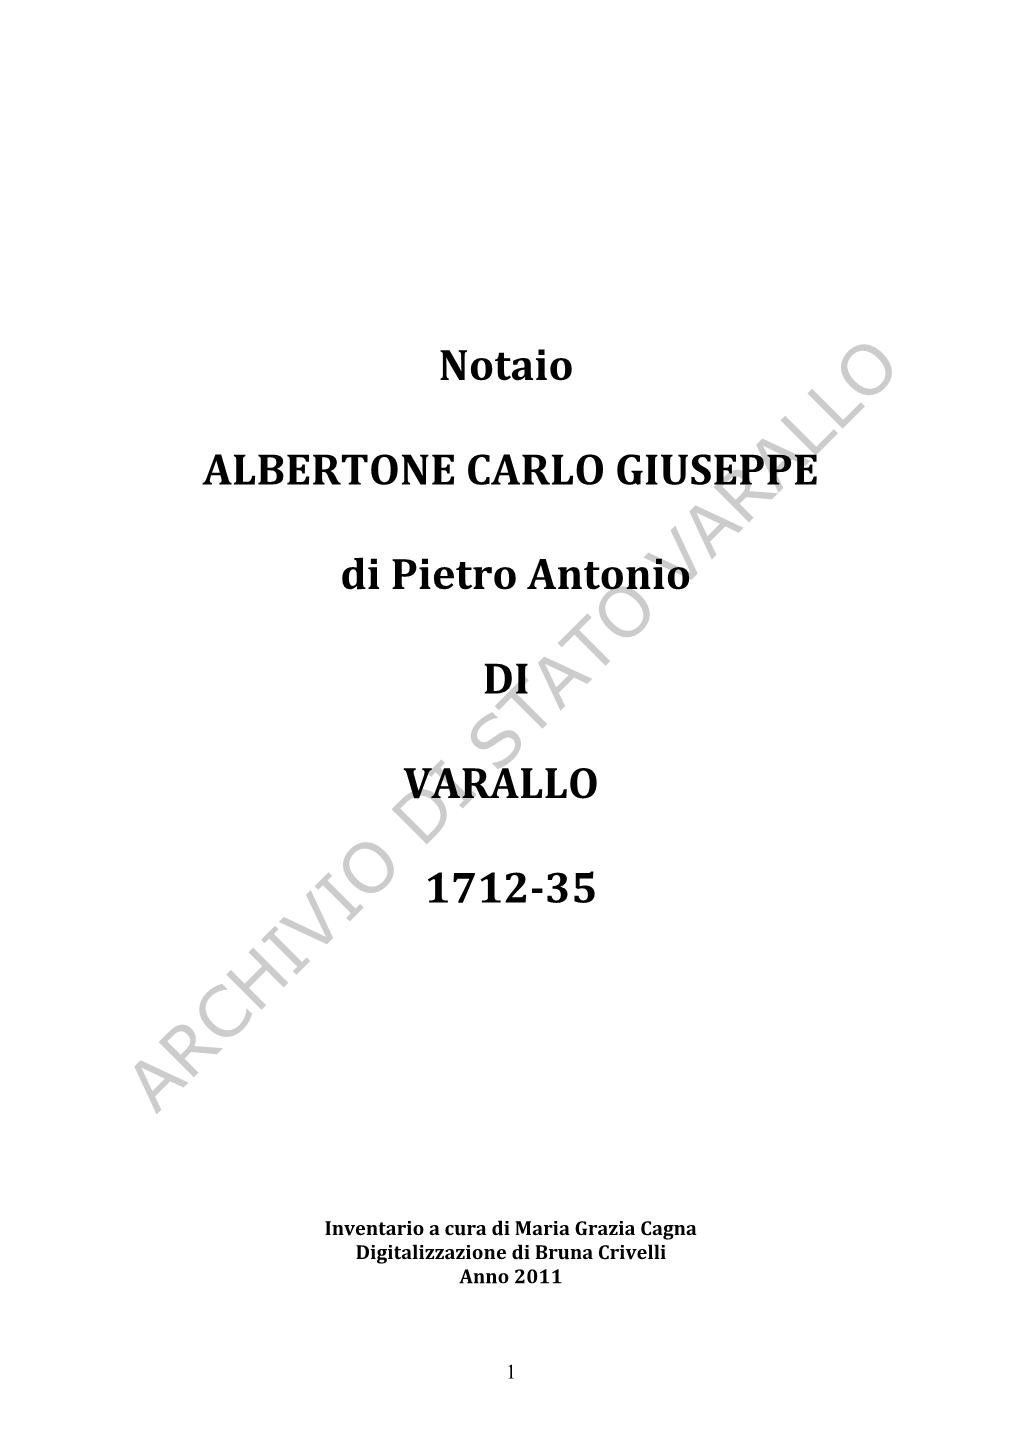 Archivio Di Stato Varallo